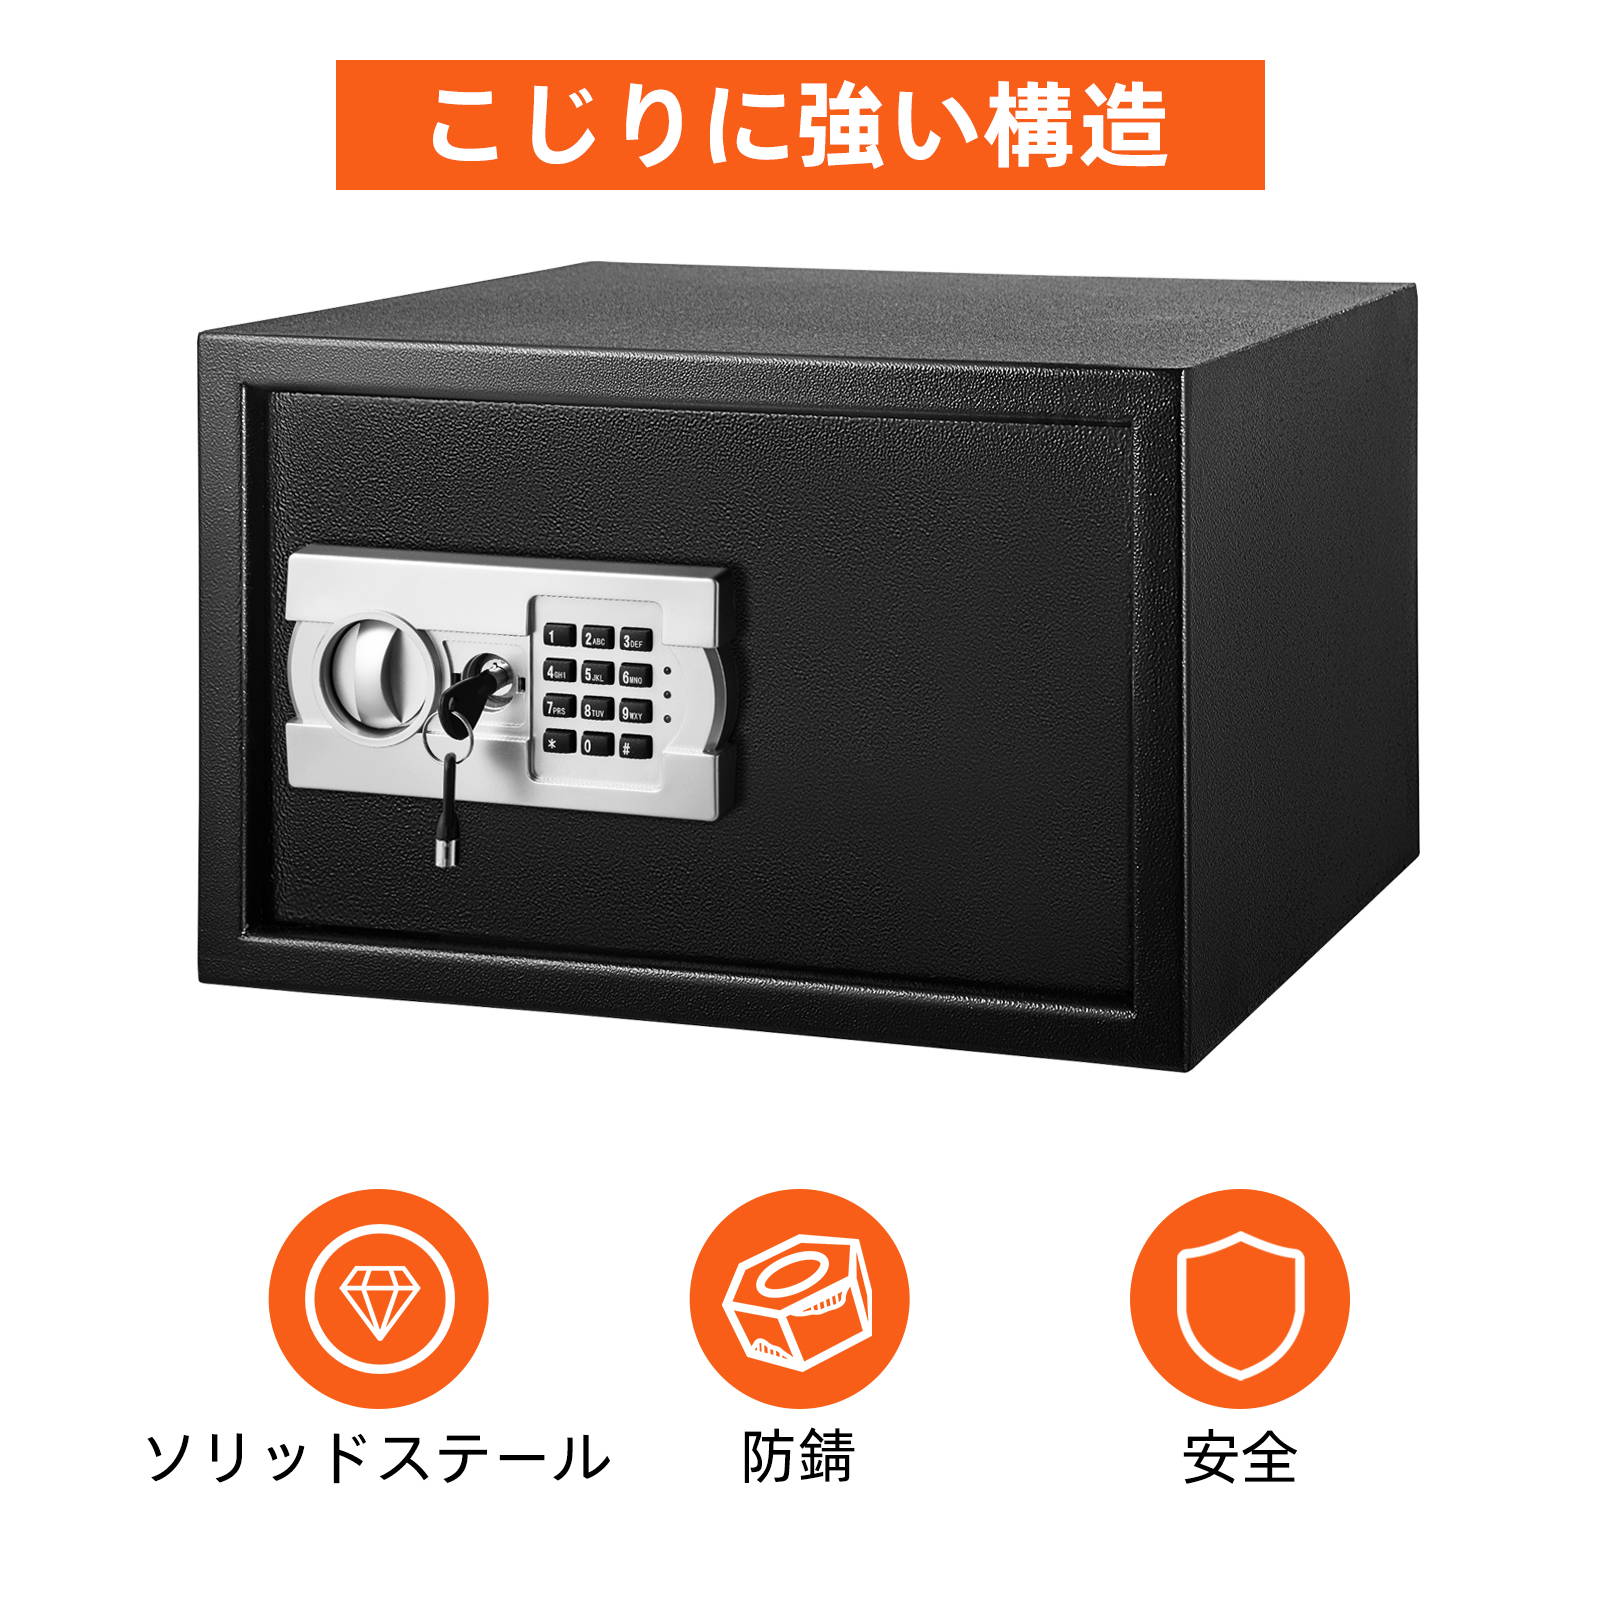 Caja fuerte con teclado electrónico digital de seguridad mini cajas fuertes  con caja fuerte gris y caja de seguridad para oficina en casa, viajes